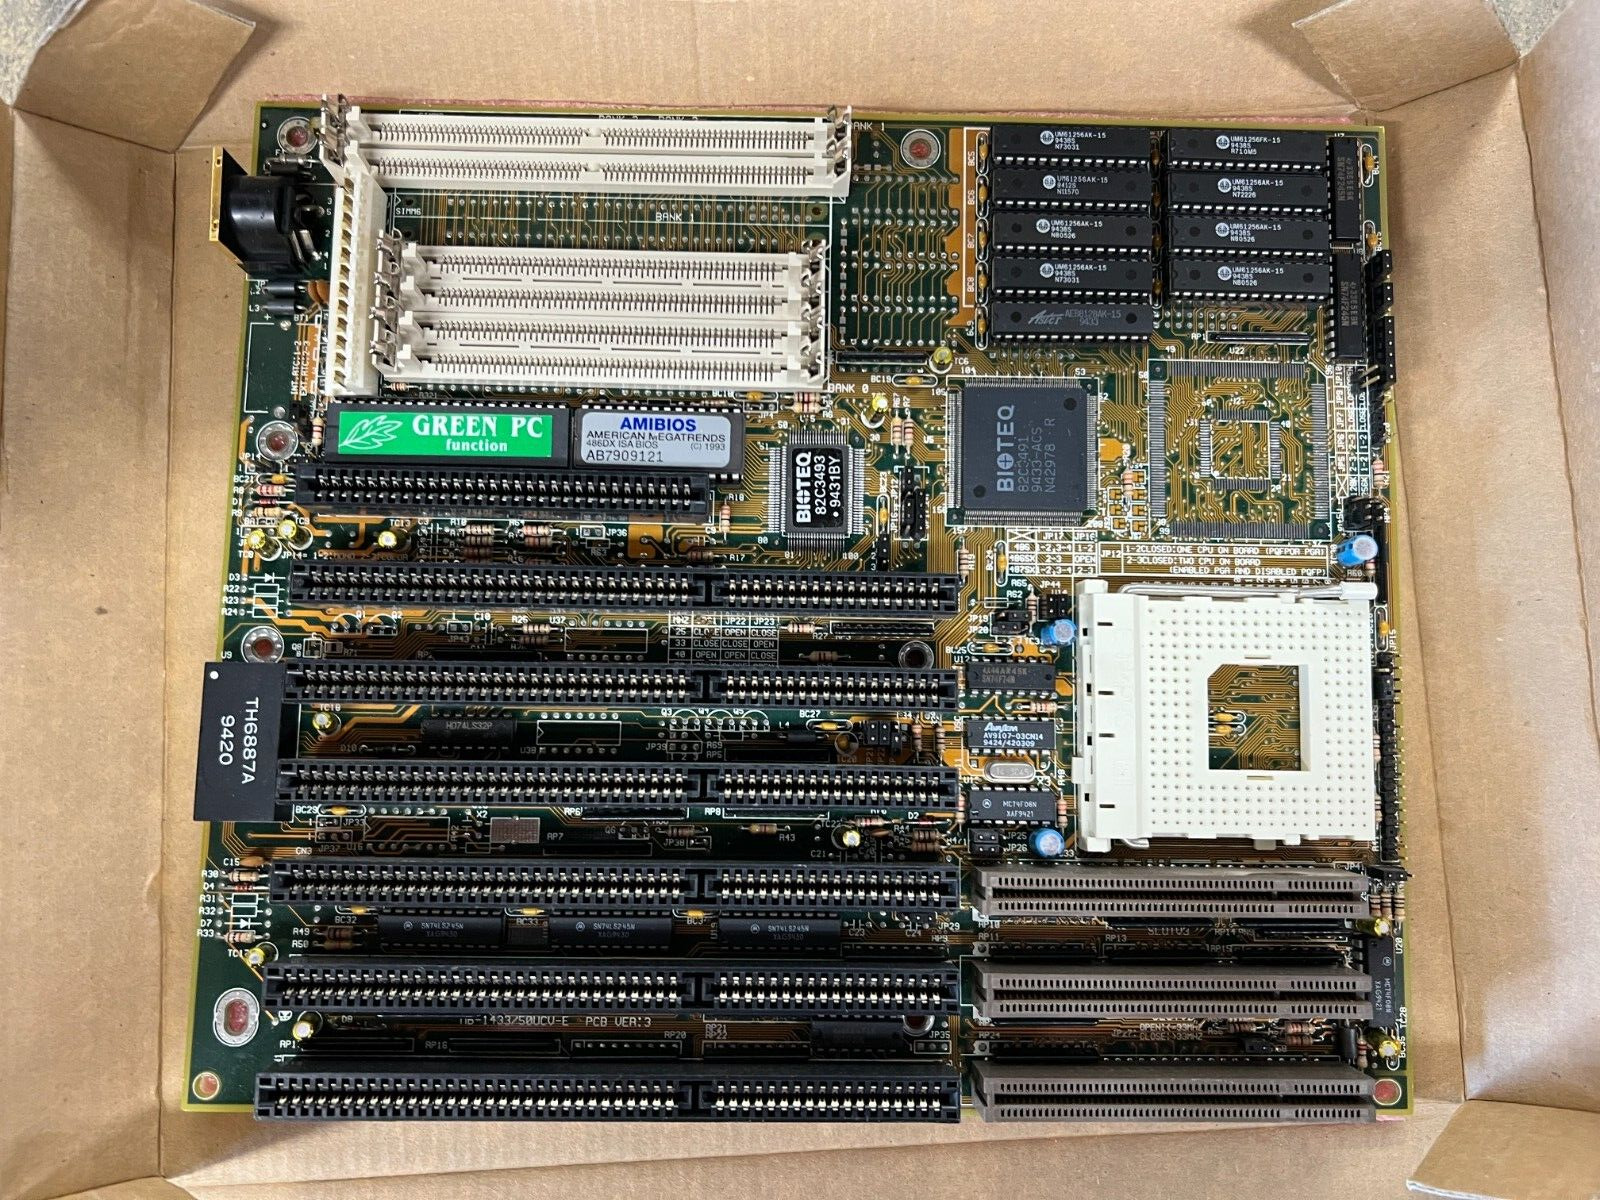 VINTAGE 486 Dx Motherboard 1991 BIOTEQ MB-1433/50UCV - NEW OPEN BOX